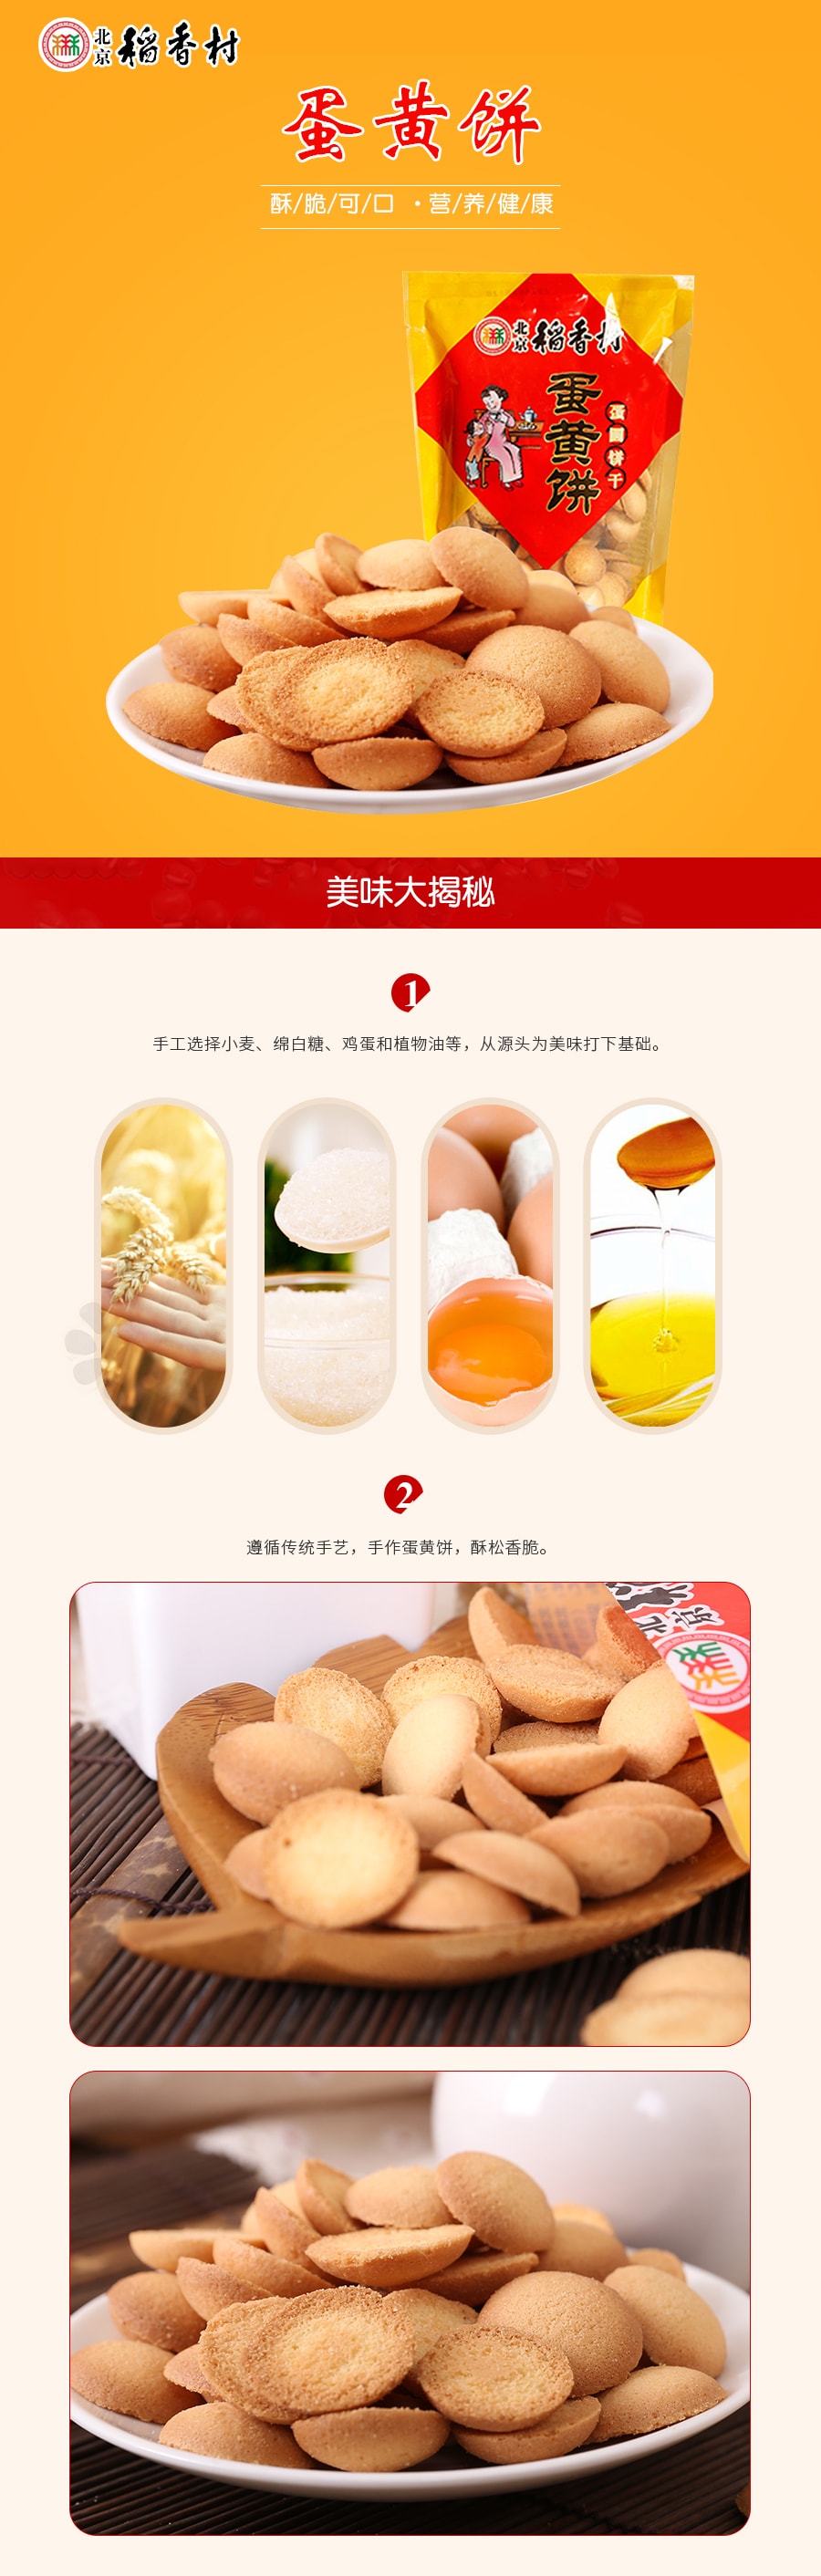 【中国直邮】北京稻香村 蛋黄饼 150g(下单7-10个工作日后发货)